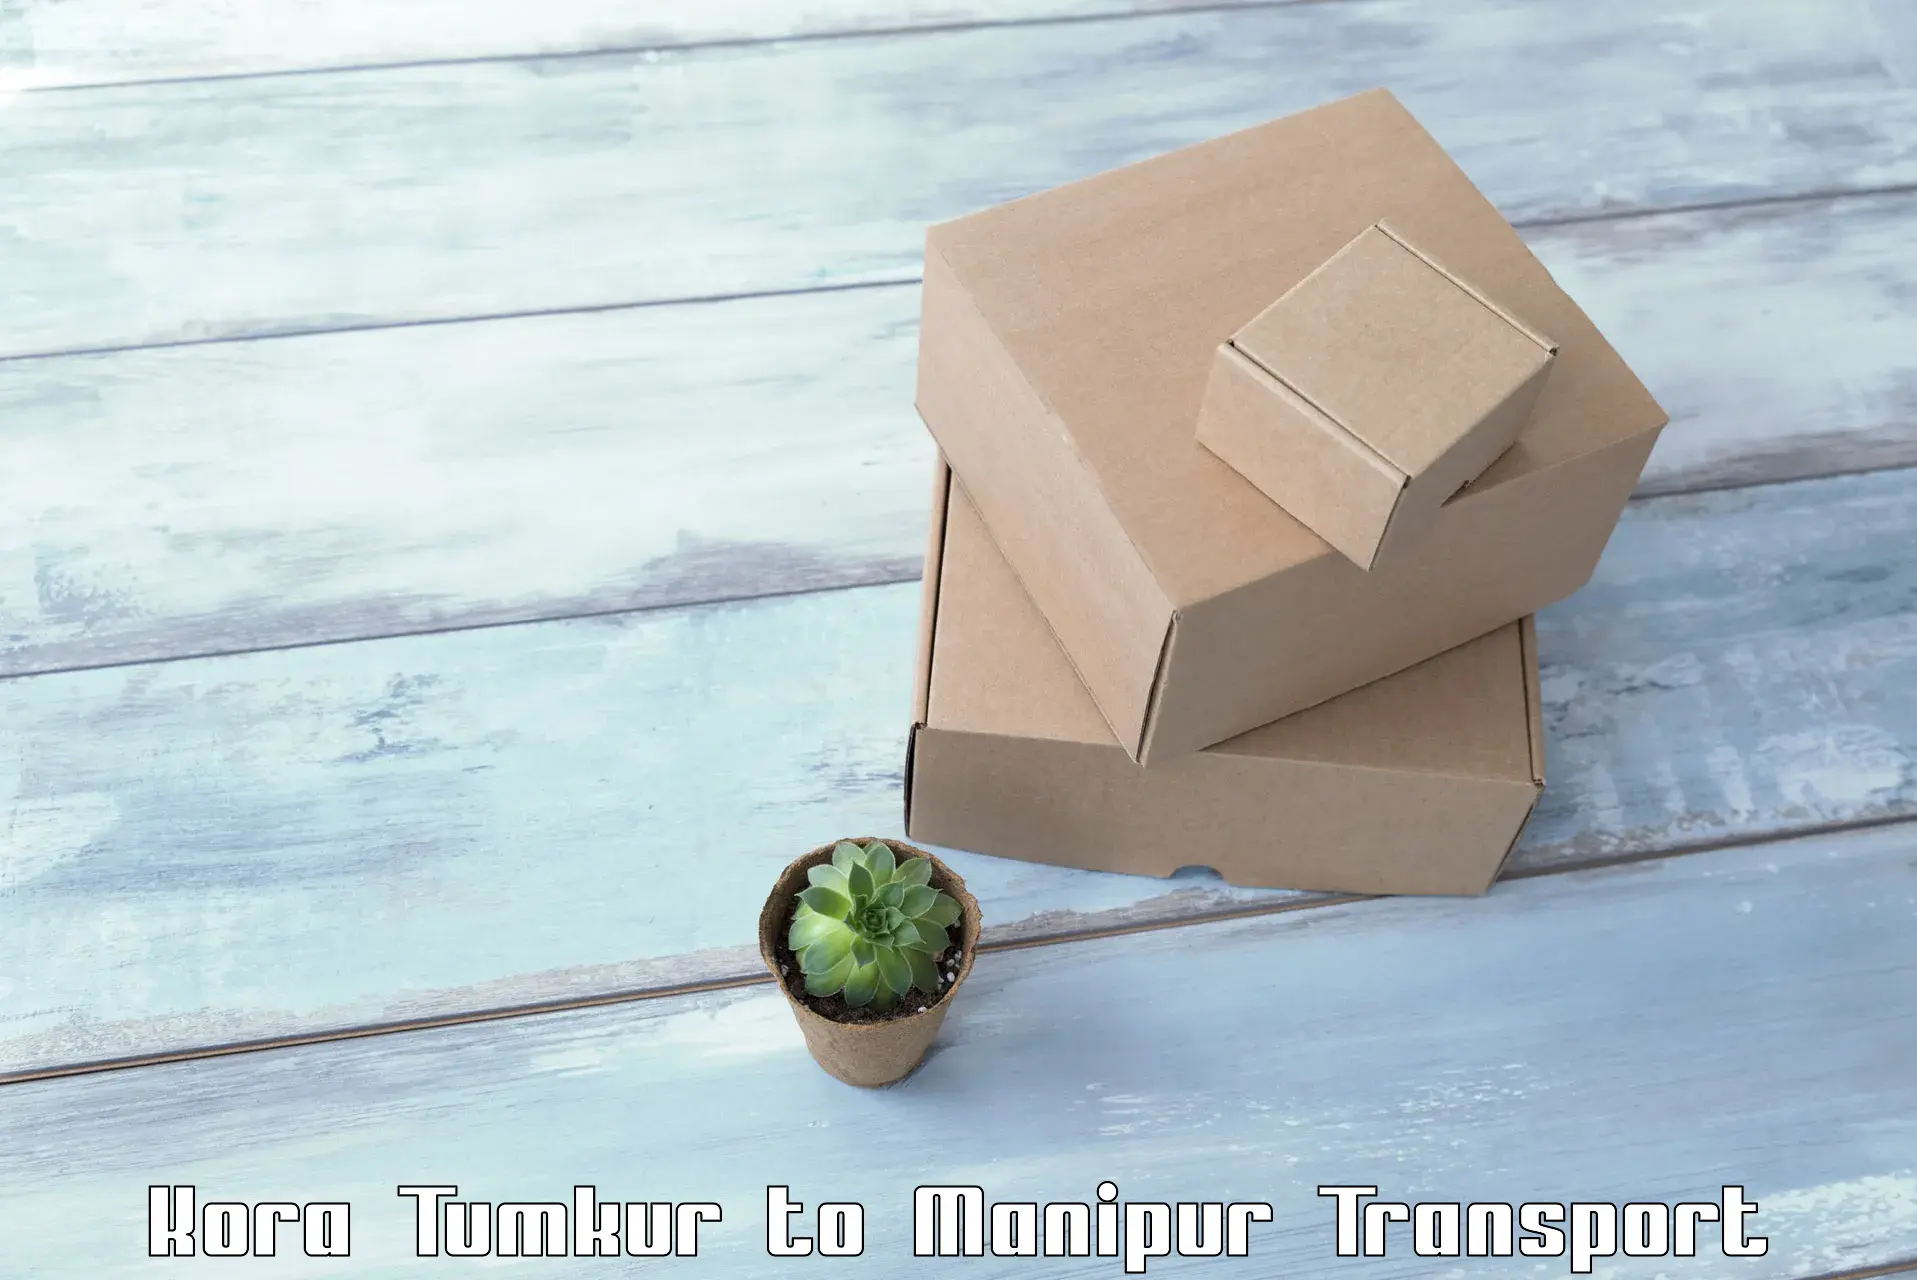 Pick up transport service Kora Tumkur to Imphal